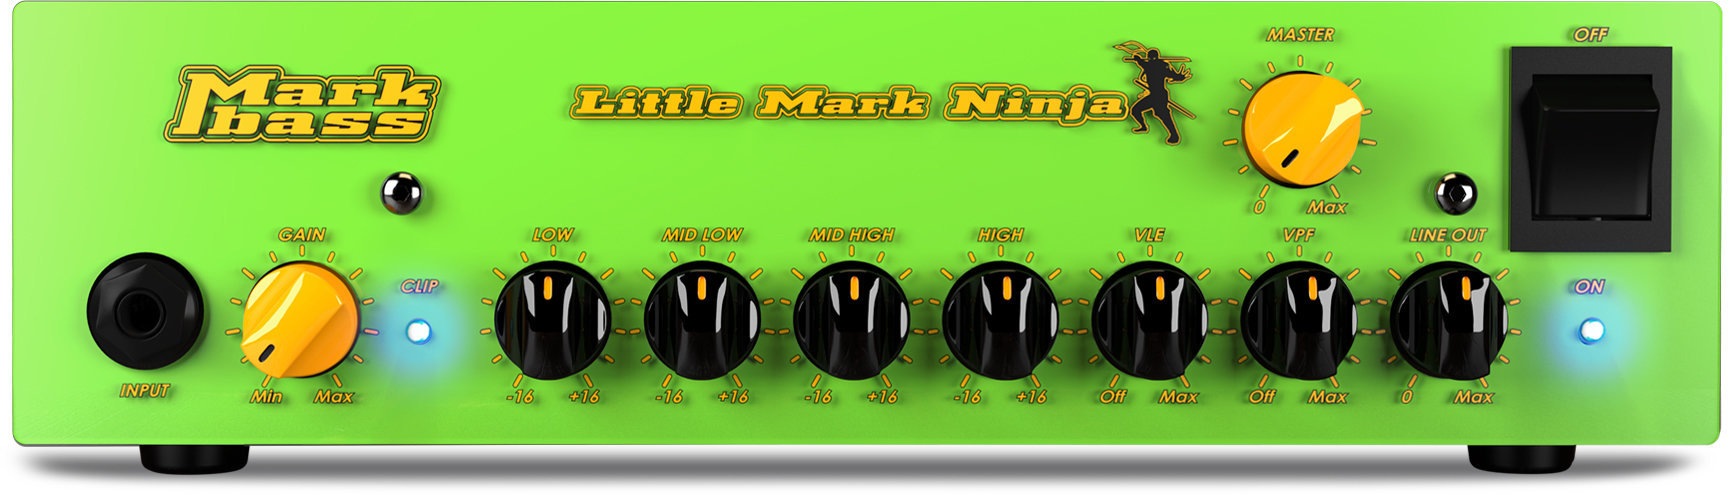 Tranzistorový basový zesilovač Markbass Little Mark Ninja